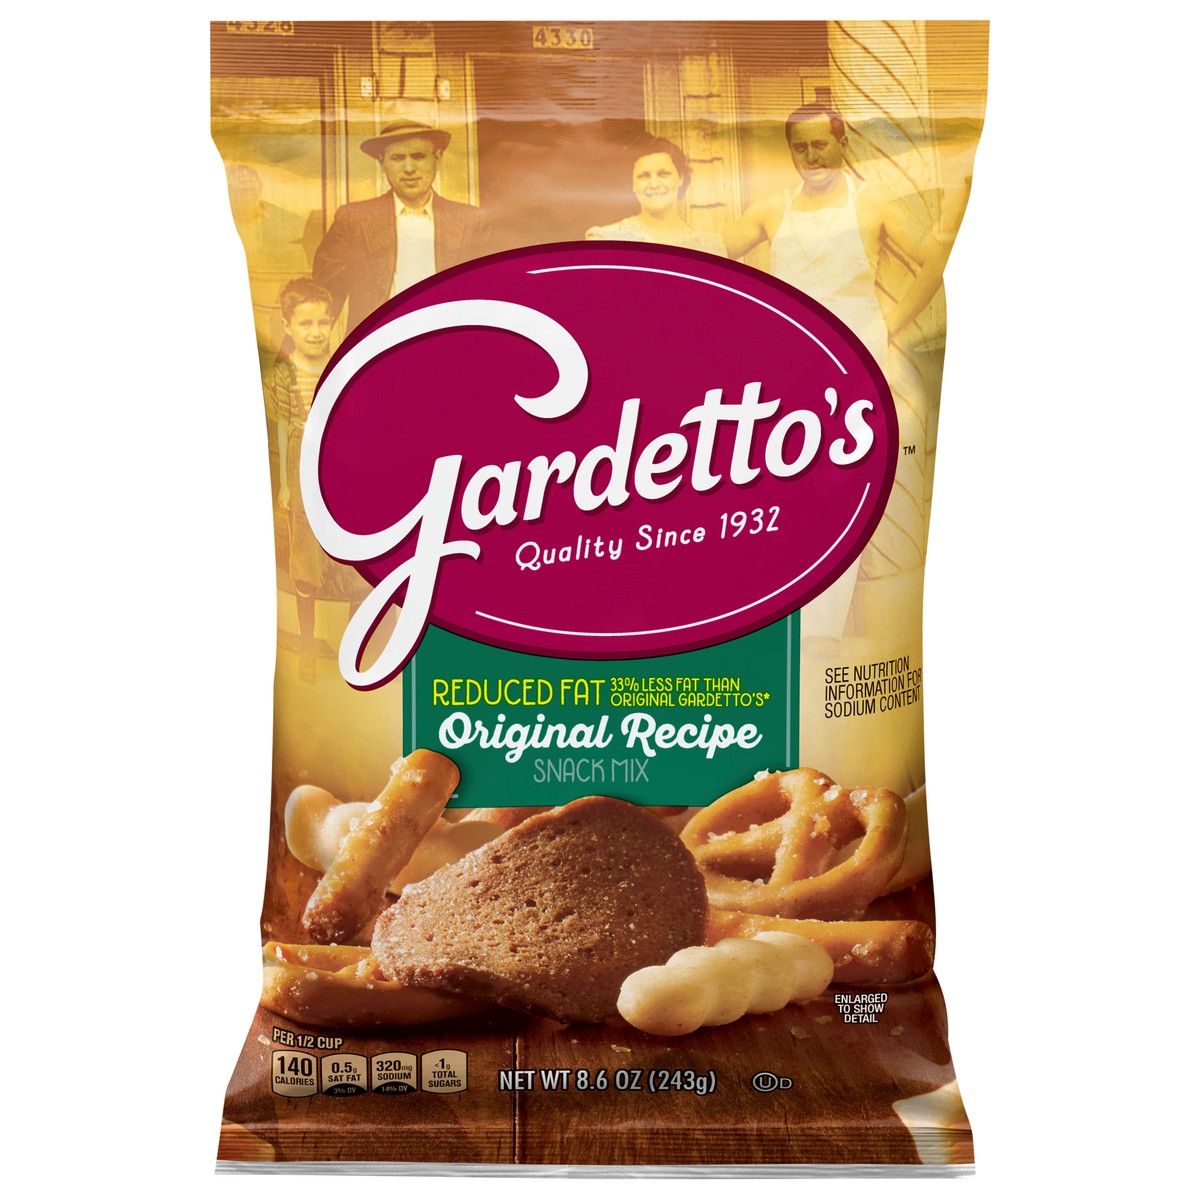 slide 6 of 14, Gardetto's, Snack Mix, Original Recipe, Reduced Fat, 8.6 oz. Bag, 8.6 oz